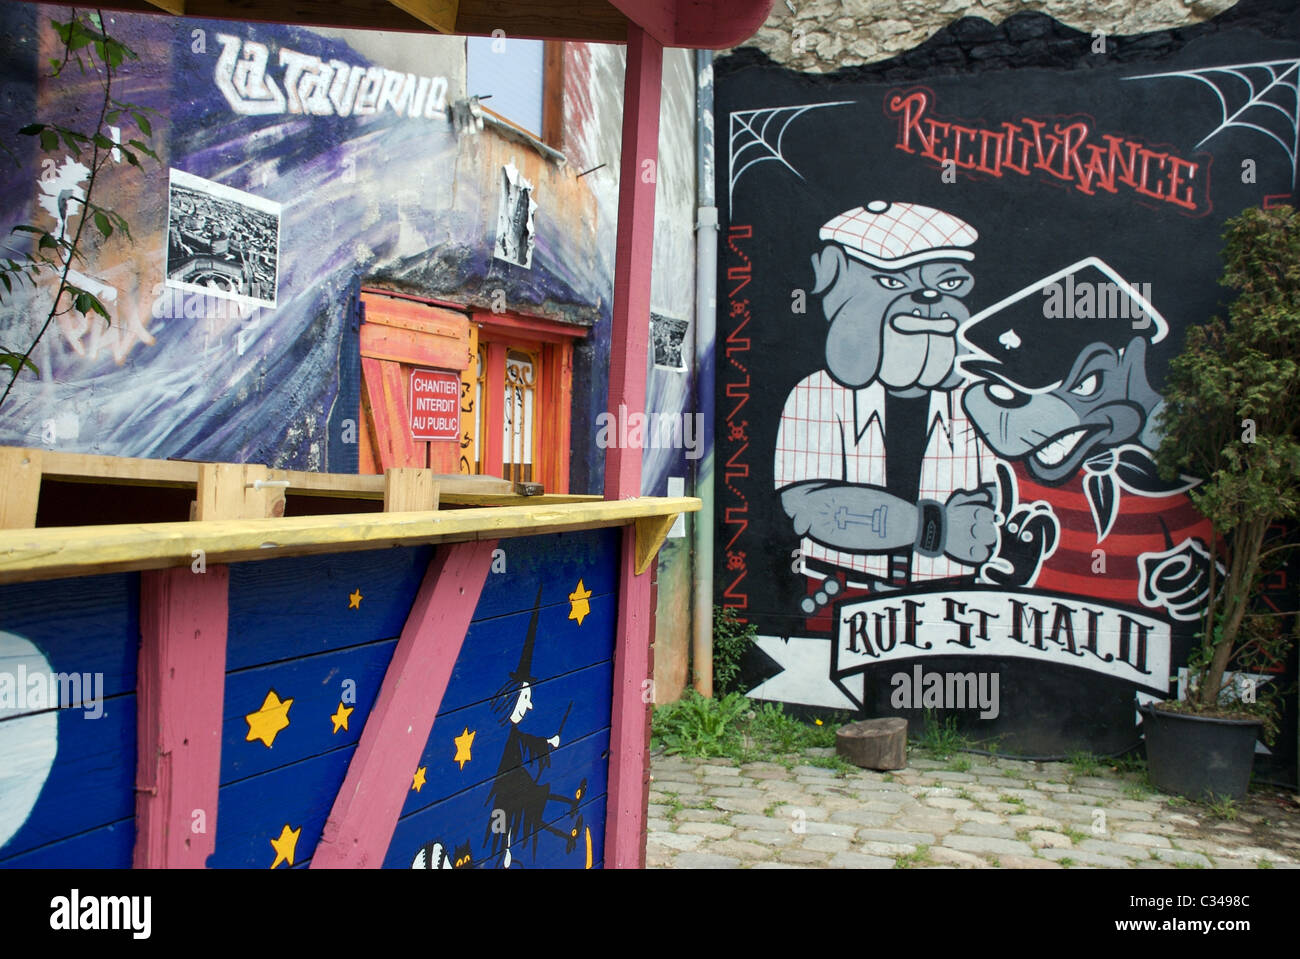 Bulldog und Ratte wall Graffiti-Kunst-Zeichen in den alten Rue Saint Malo, Brest, Bretagne, Frankreich Stockfoto